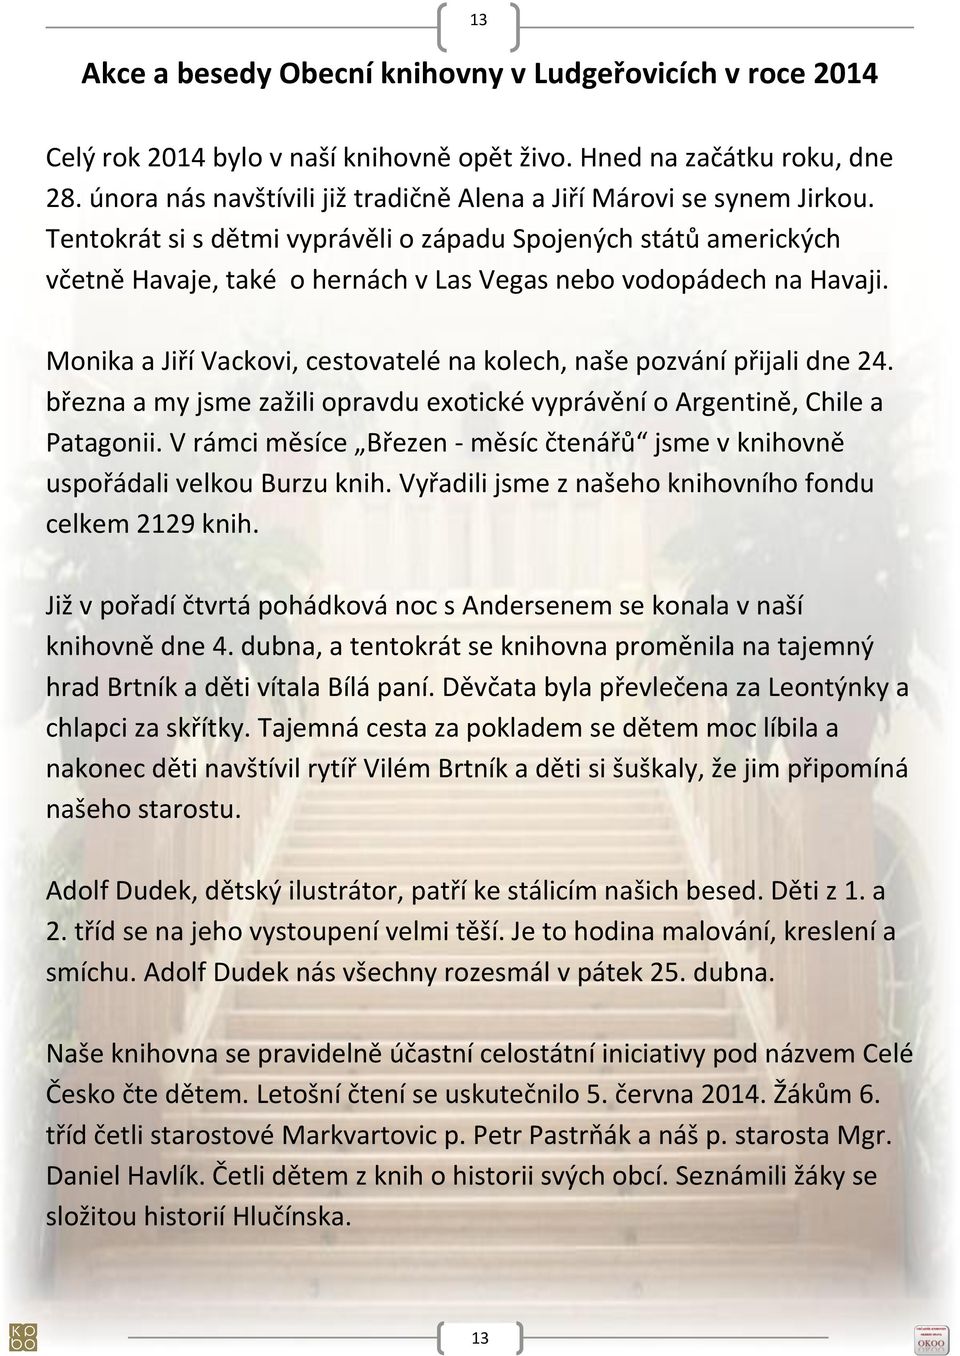 Kesansk seznamka - alahlia.info